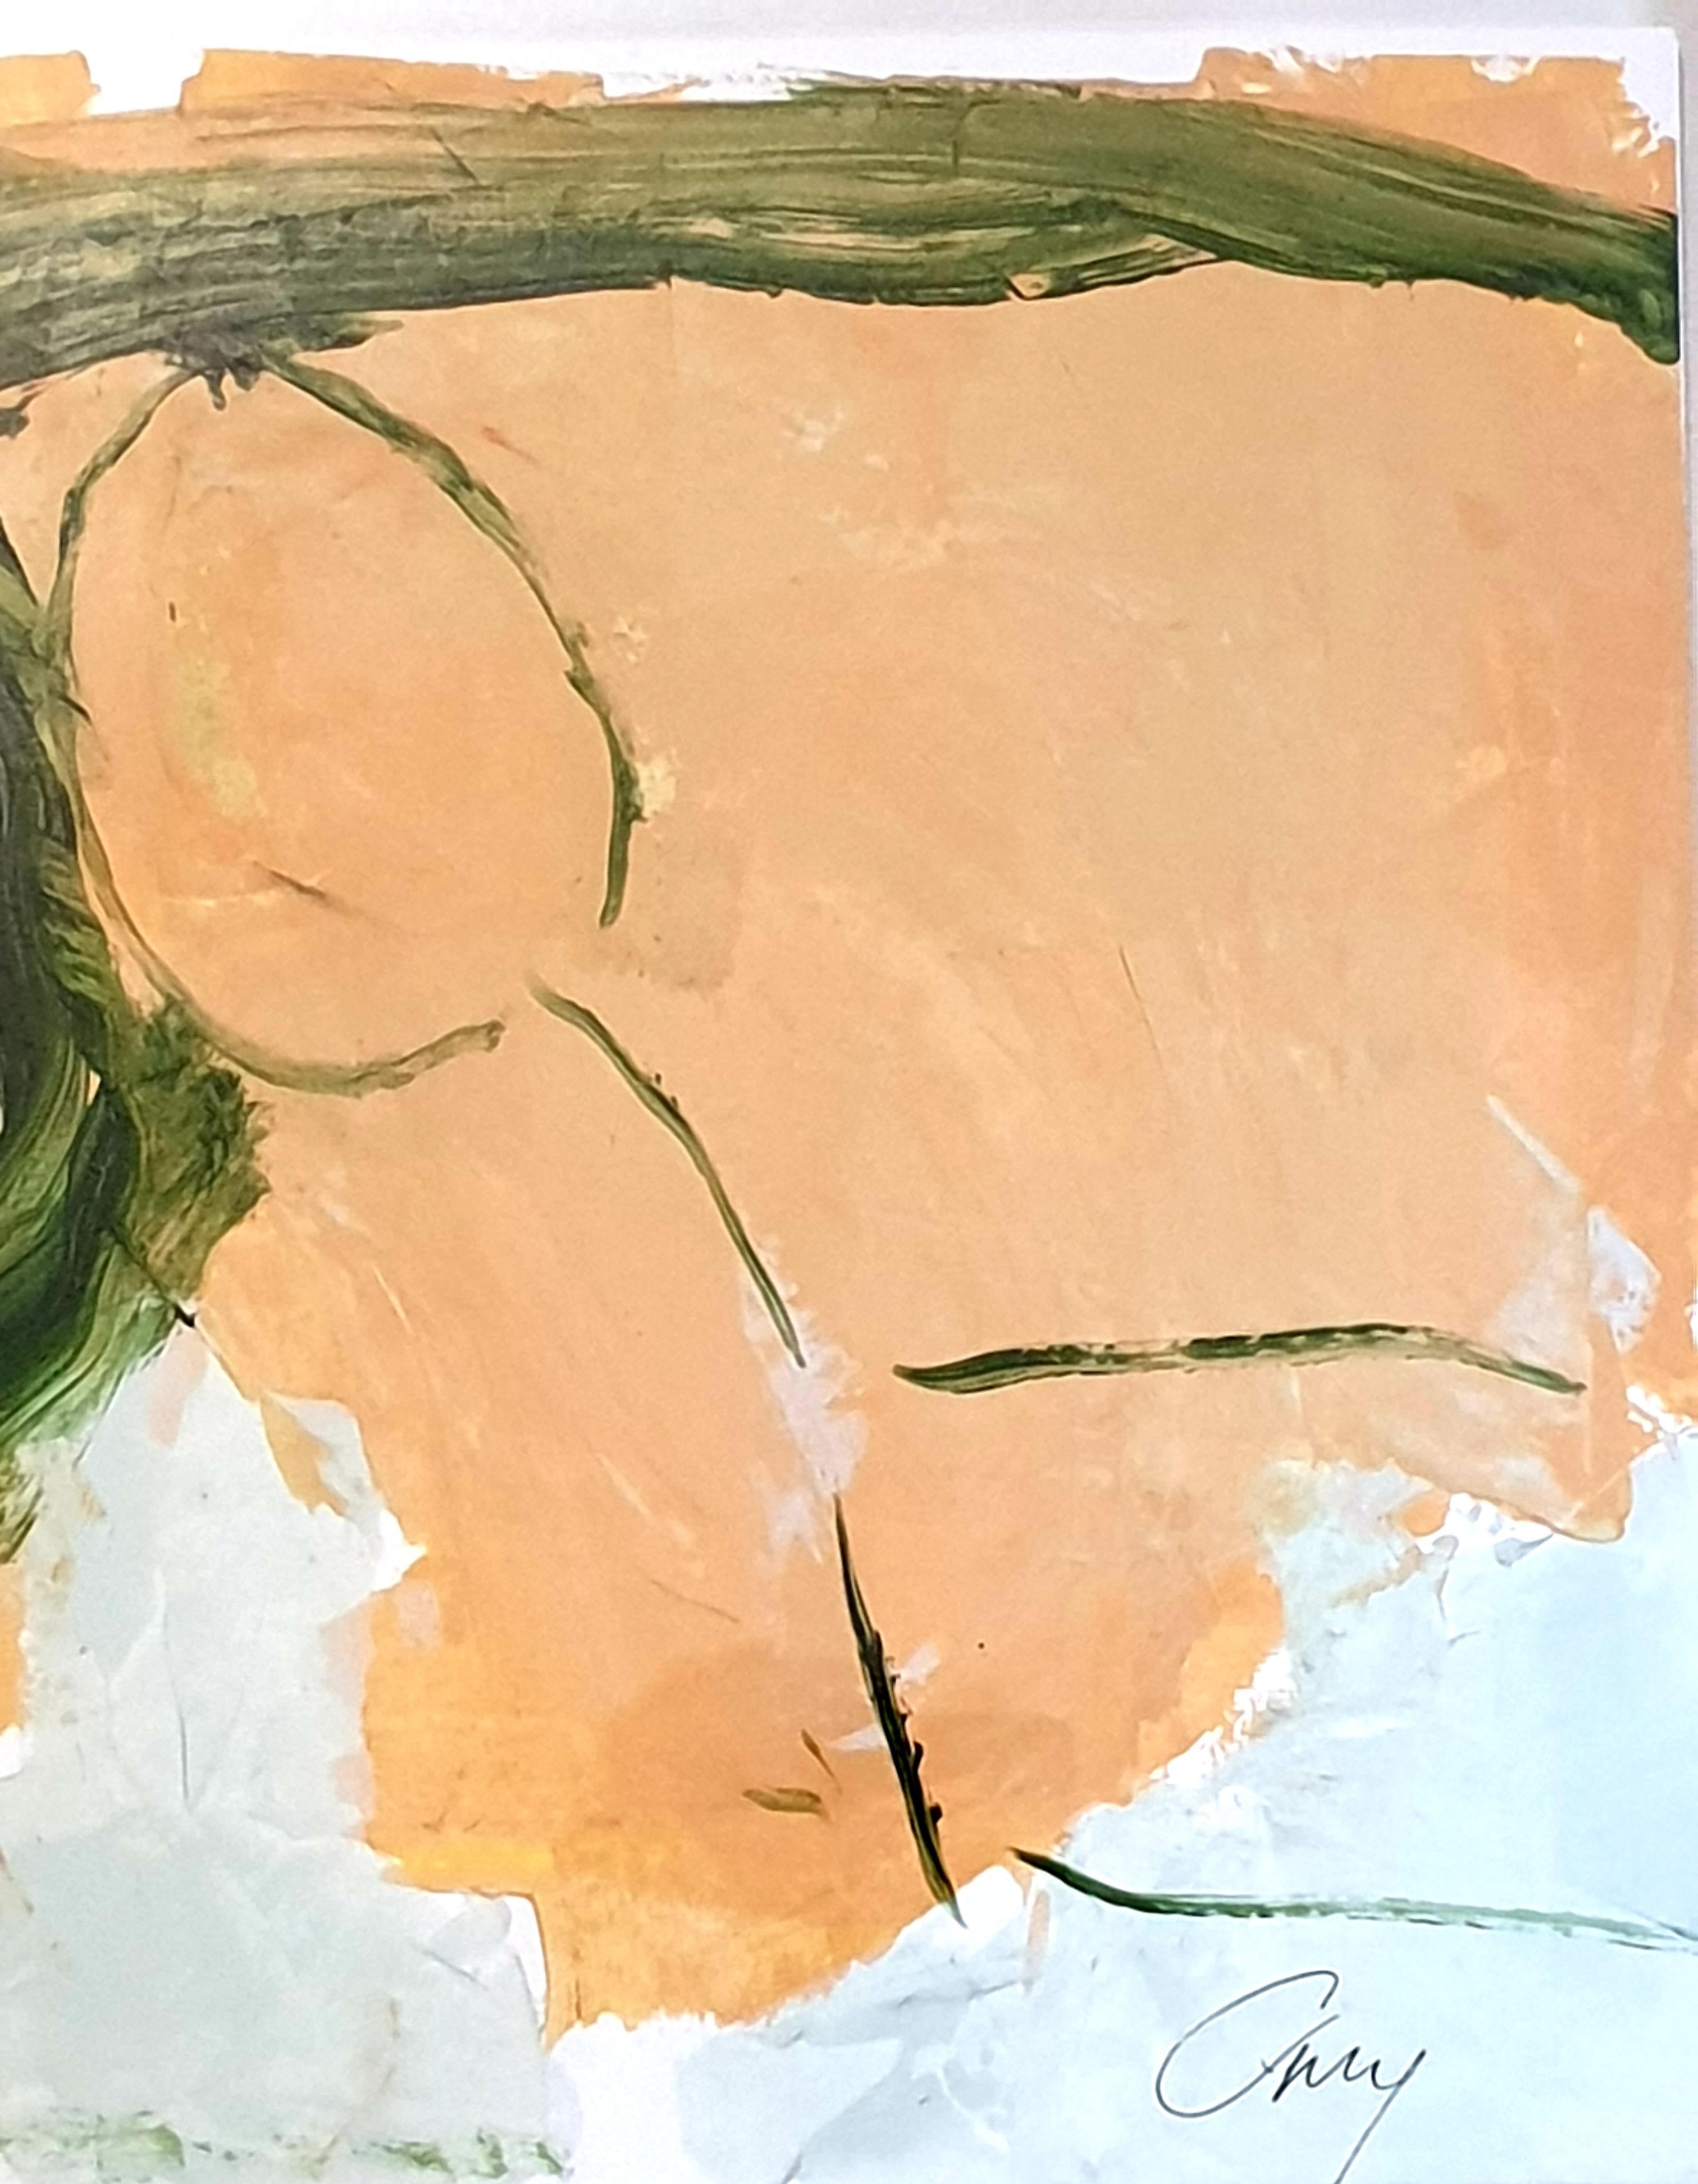 Zeitgenössisches abstraktes expressionistisches Acrylbild in Grün und Pfirsich einer Landschaft auf Papier des französischen Künstlers Christian Manoury. Signiert unten rechts. Datiert 2021 und auf der Rückseite signiert. Präsentiert in einem